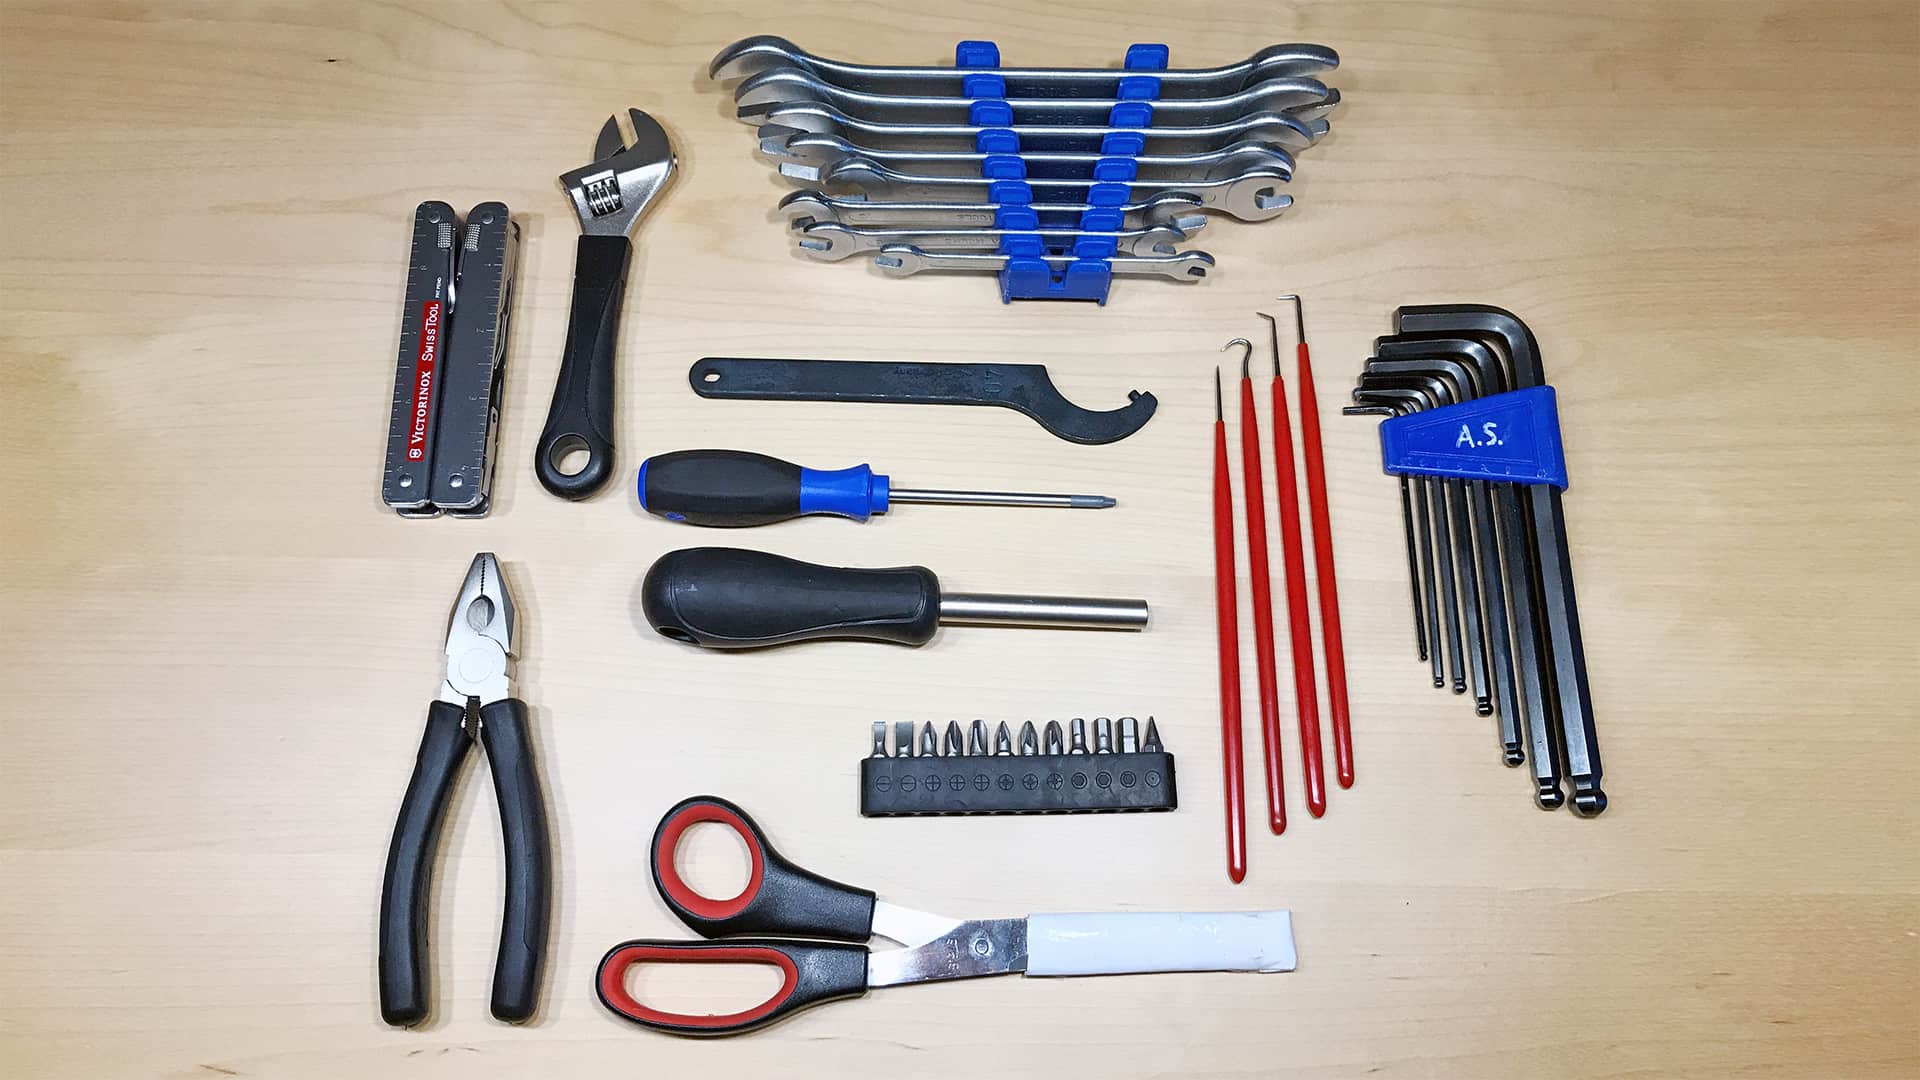 Foto: Werkzeuge im Werkzeugkoffer